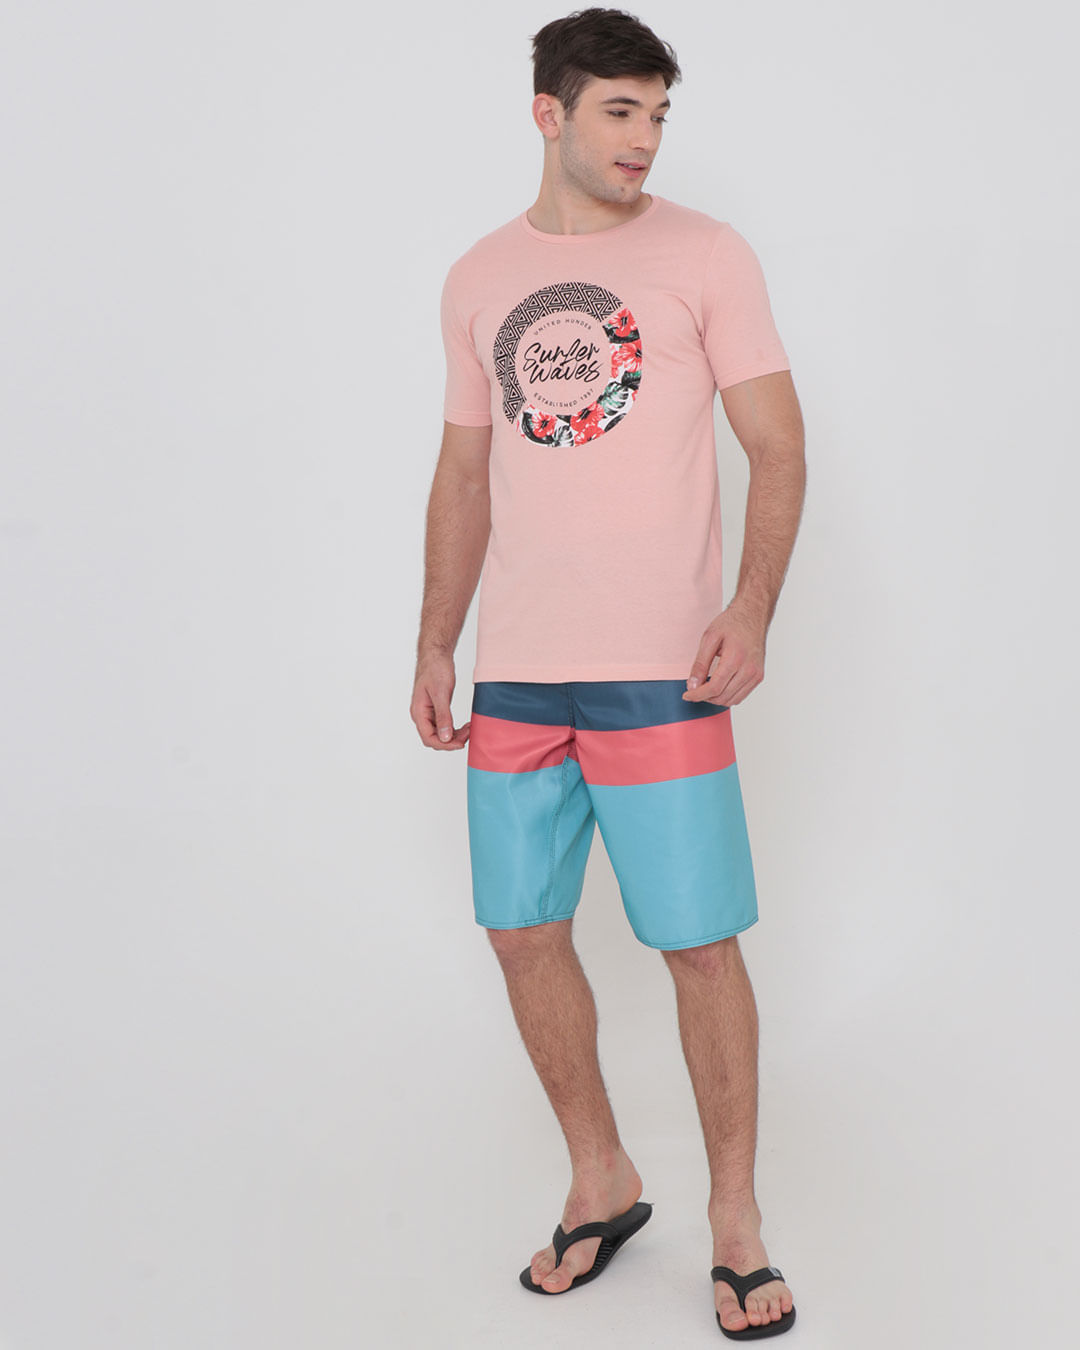 Camiseta-Surf-Estampa-Surfer-Waves-Rosa